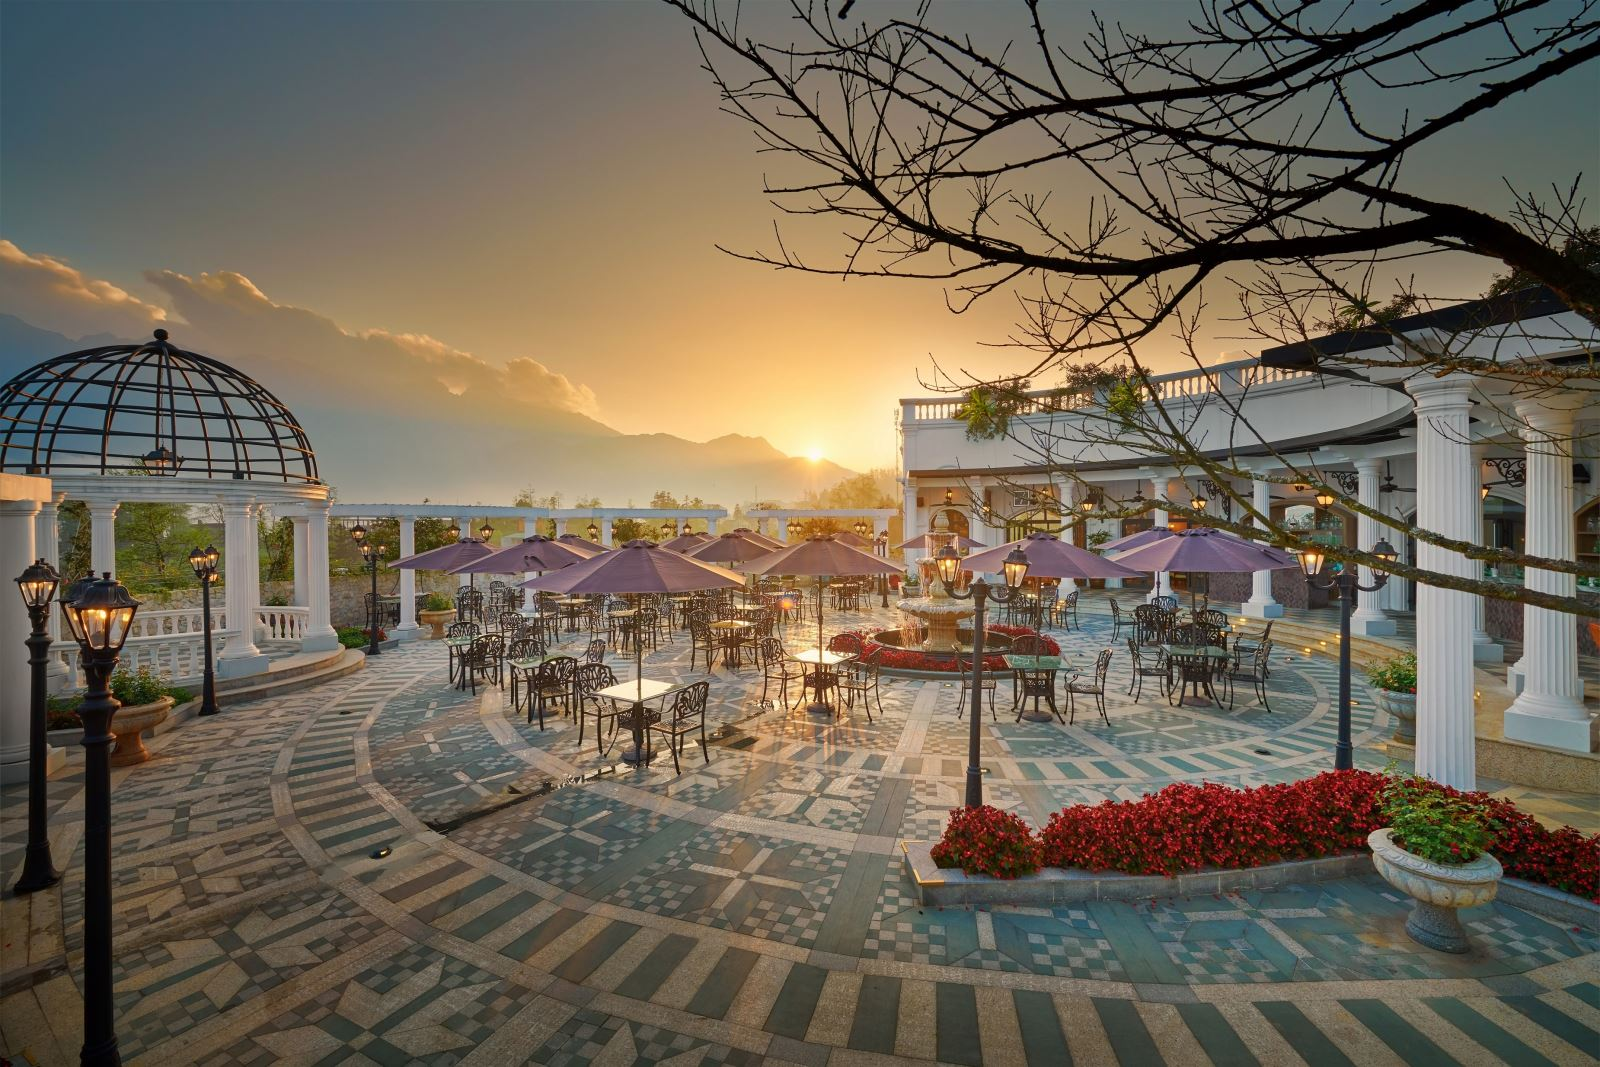 Khu vườn của Silk Path Grand Resort & Spa tuyệt đẹp (Nguồn: baodulich.net.vn)